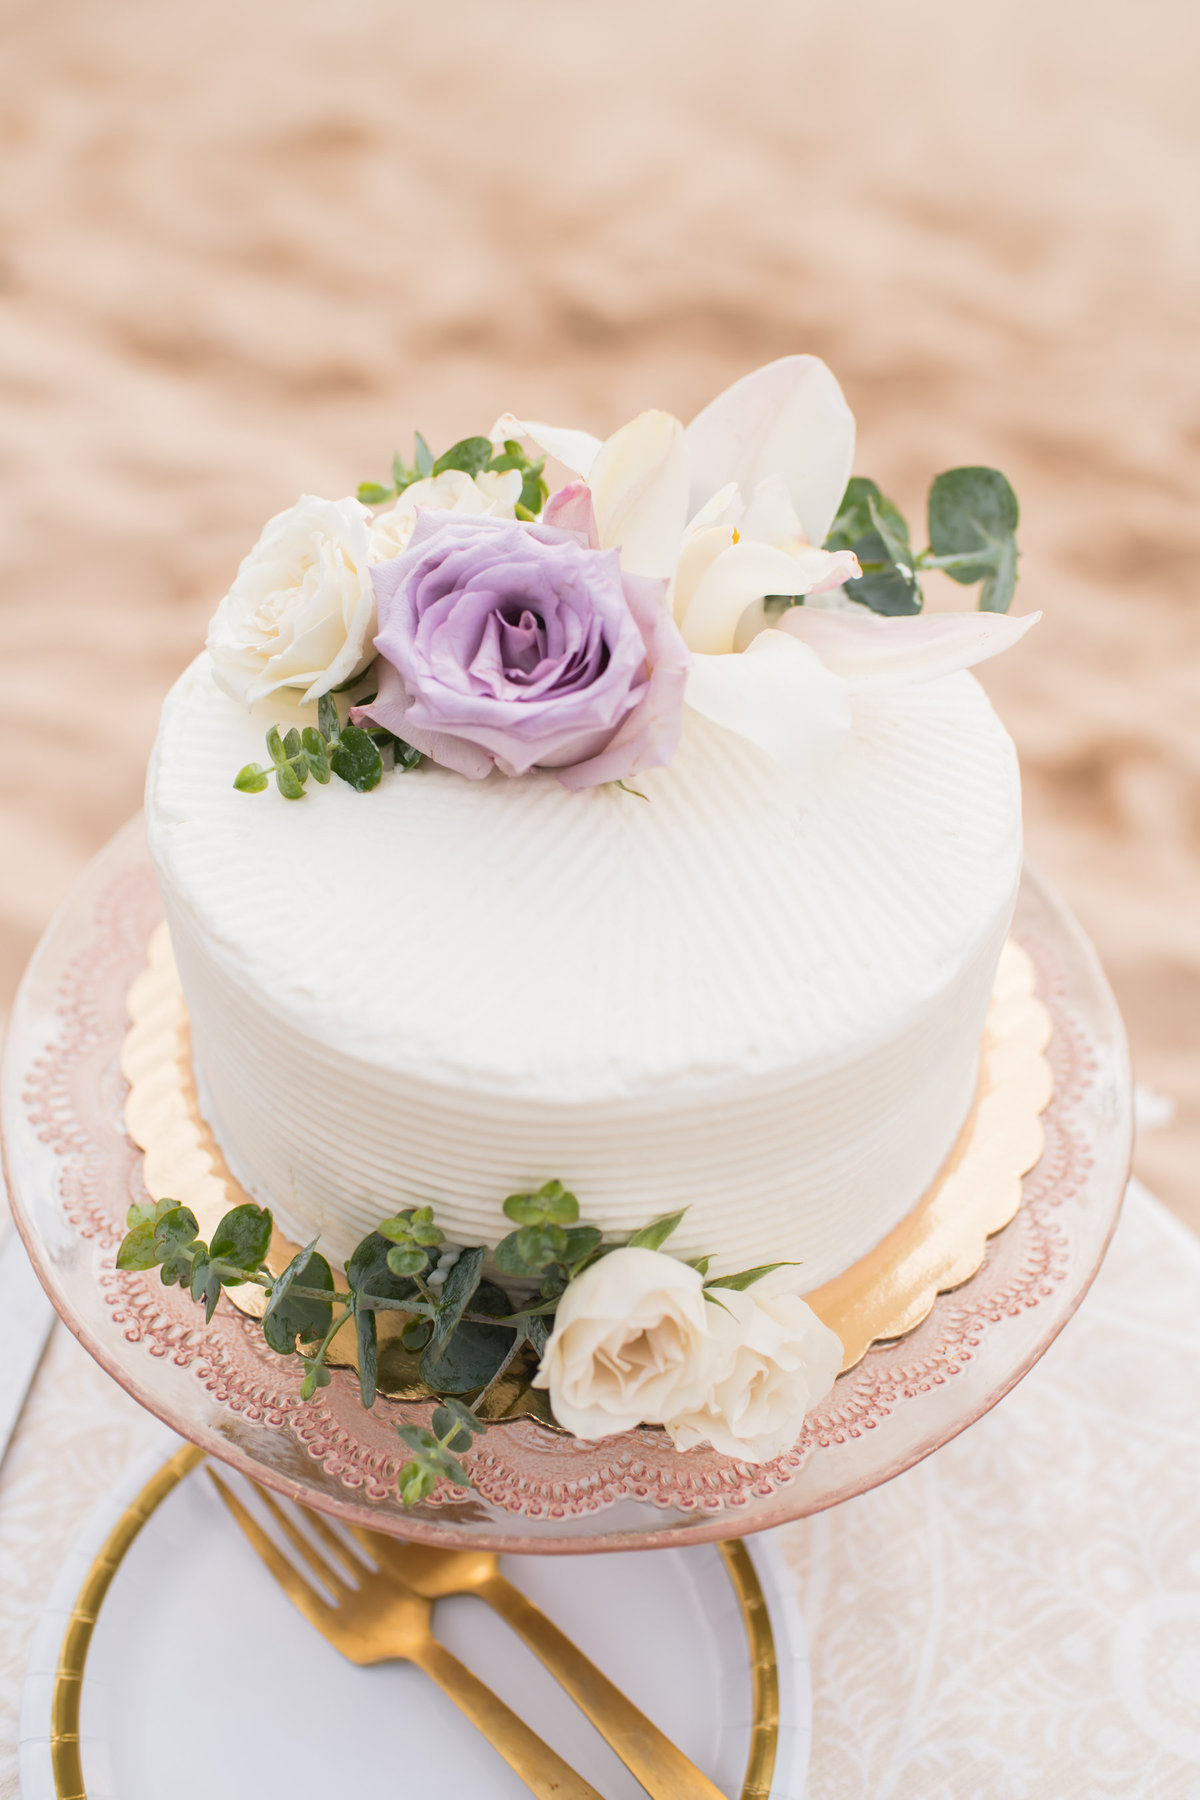 Maui wedding photography - cake